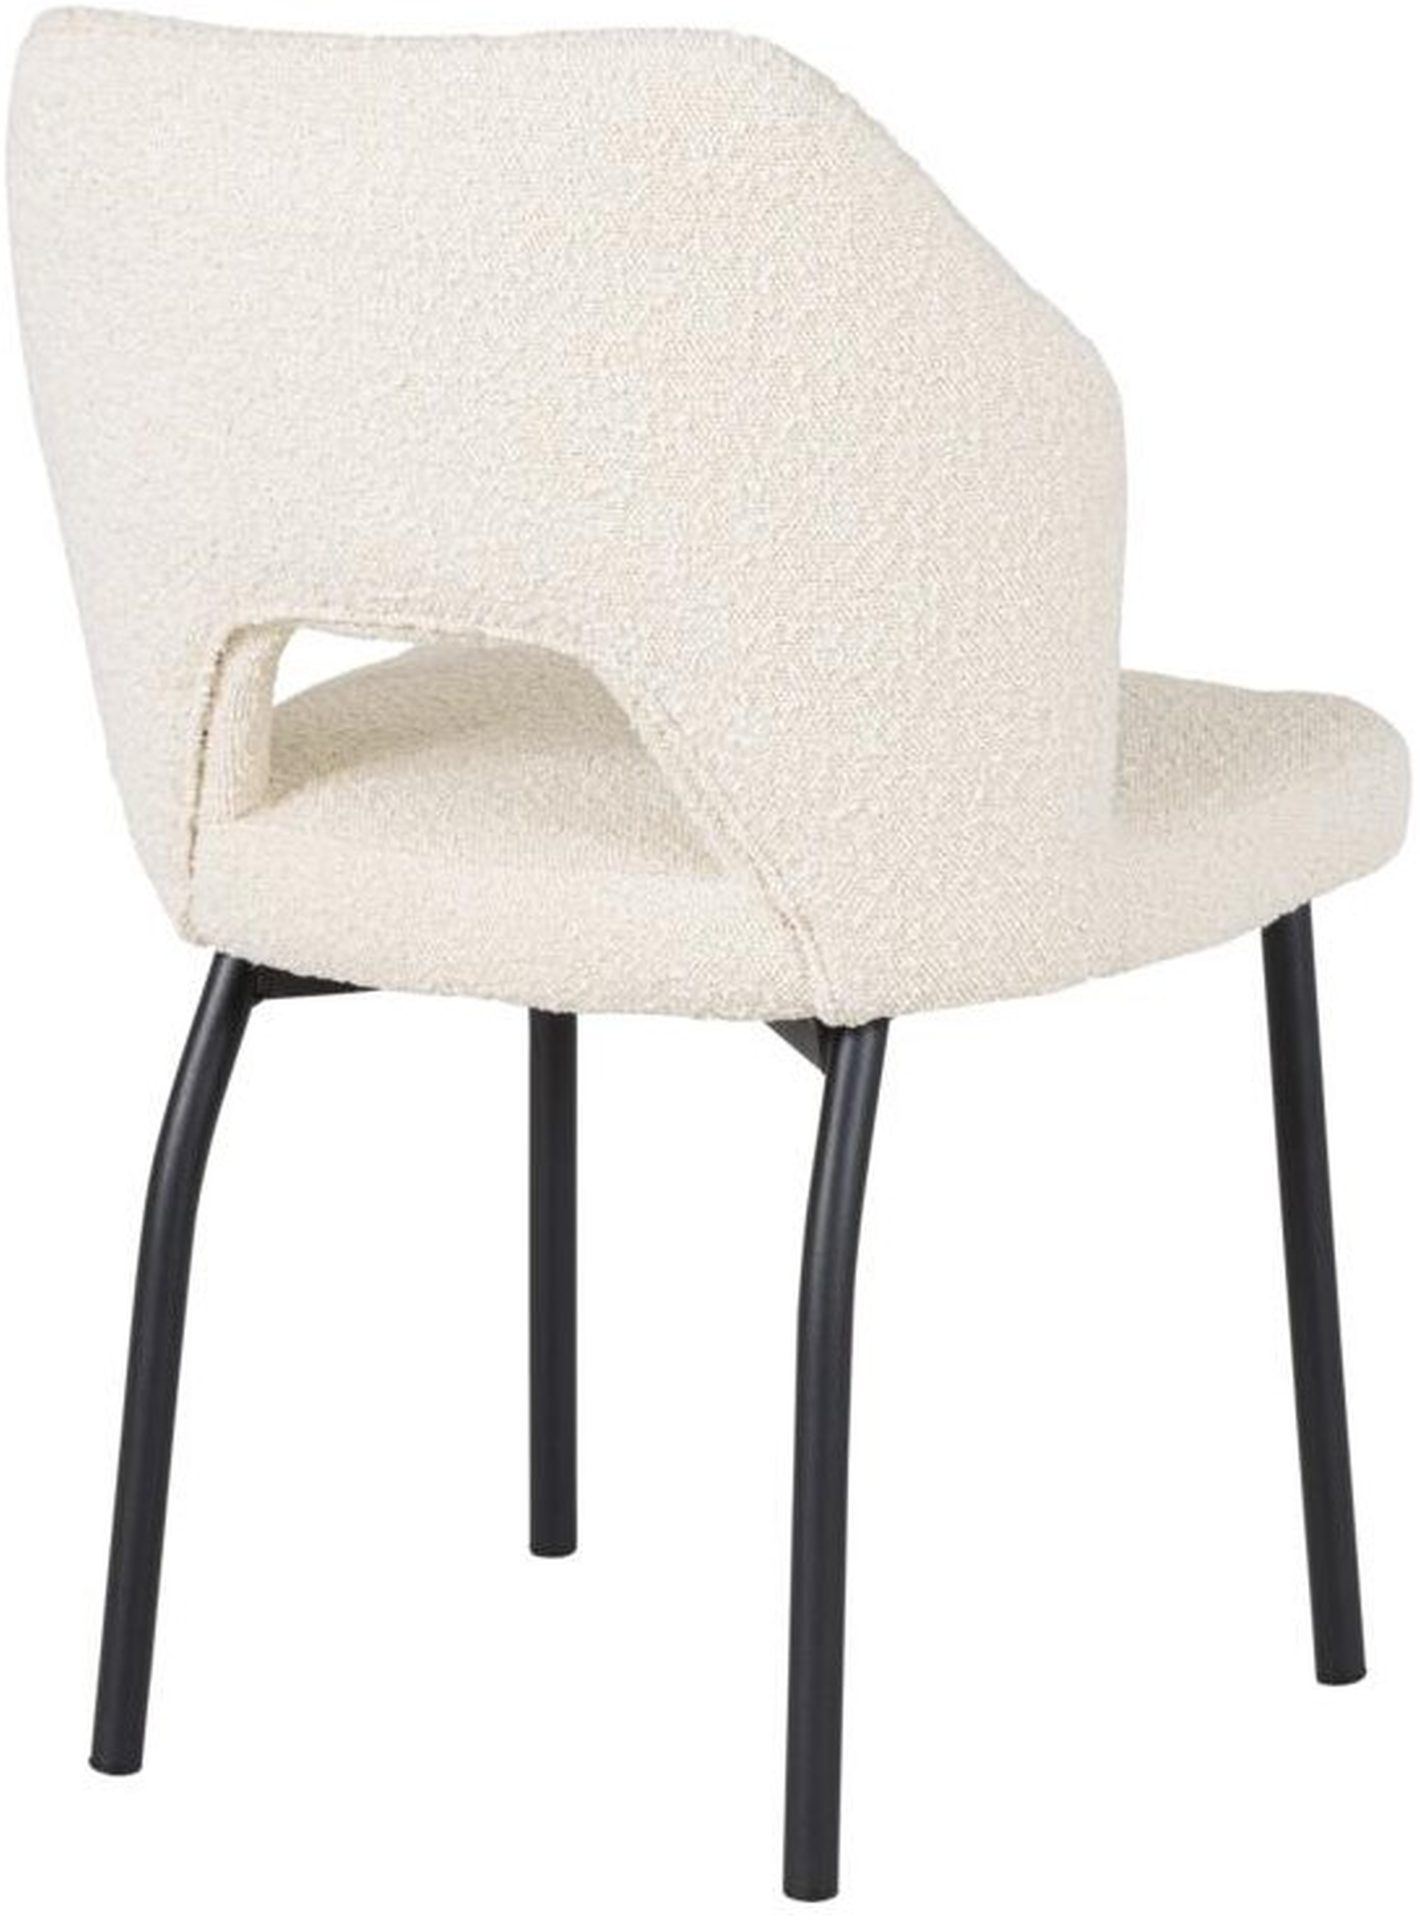 Der Esszimmerstuhl Bloom überzeugt mit seinem modernem aber auch schlichtem Design. Gefertigt wurde der Stuhl aus einem Boucle Stoff, welcher einen Natur Farbton besitzt. Das Gestell ist aus Metall und ist Schwarz.